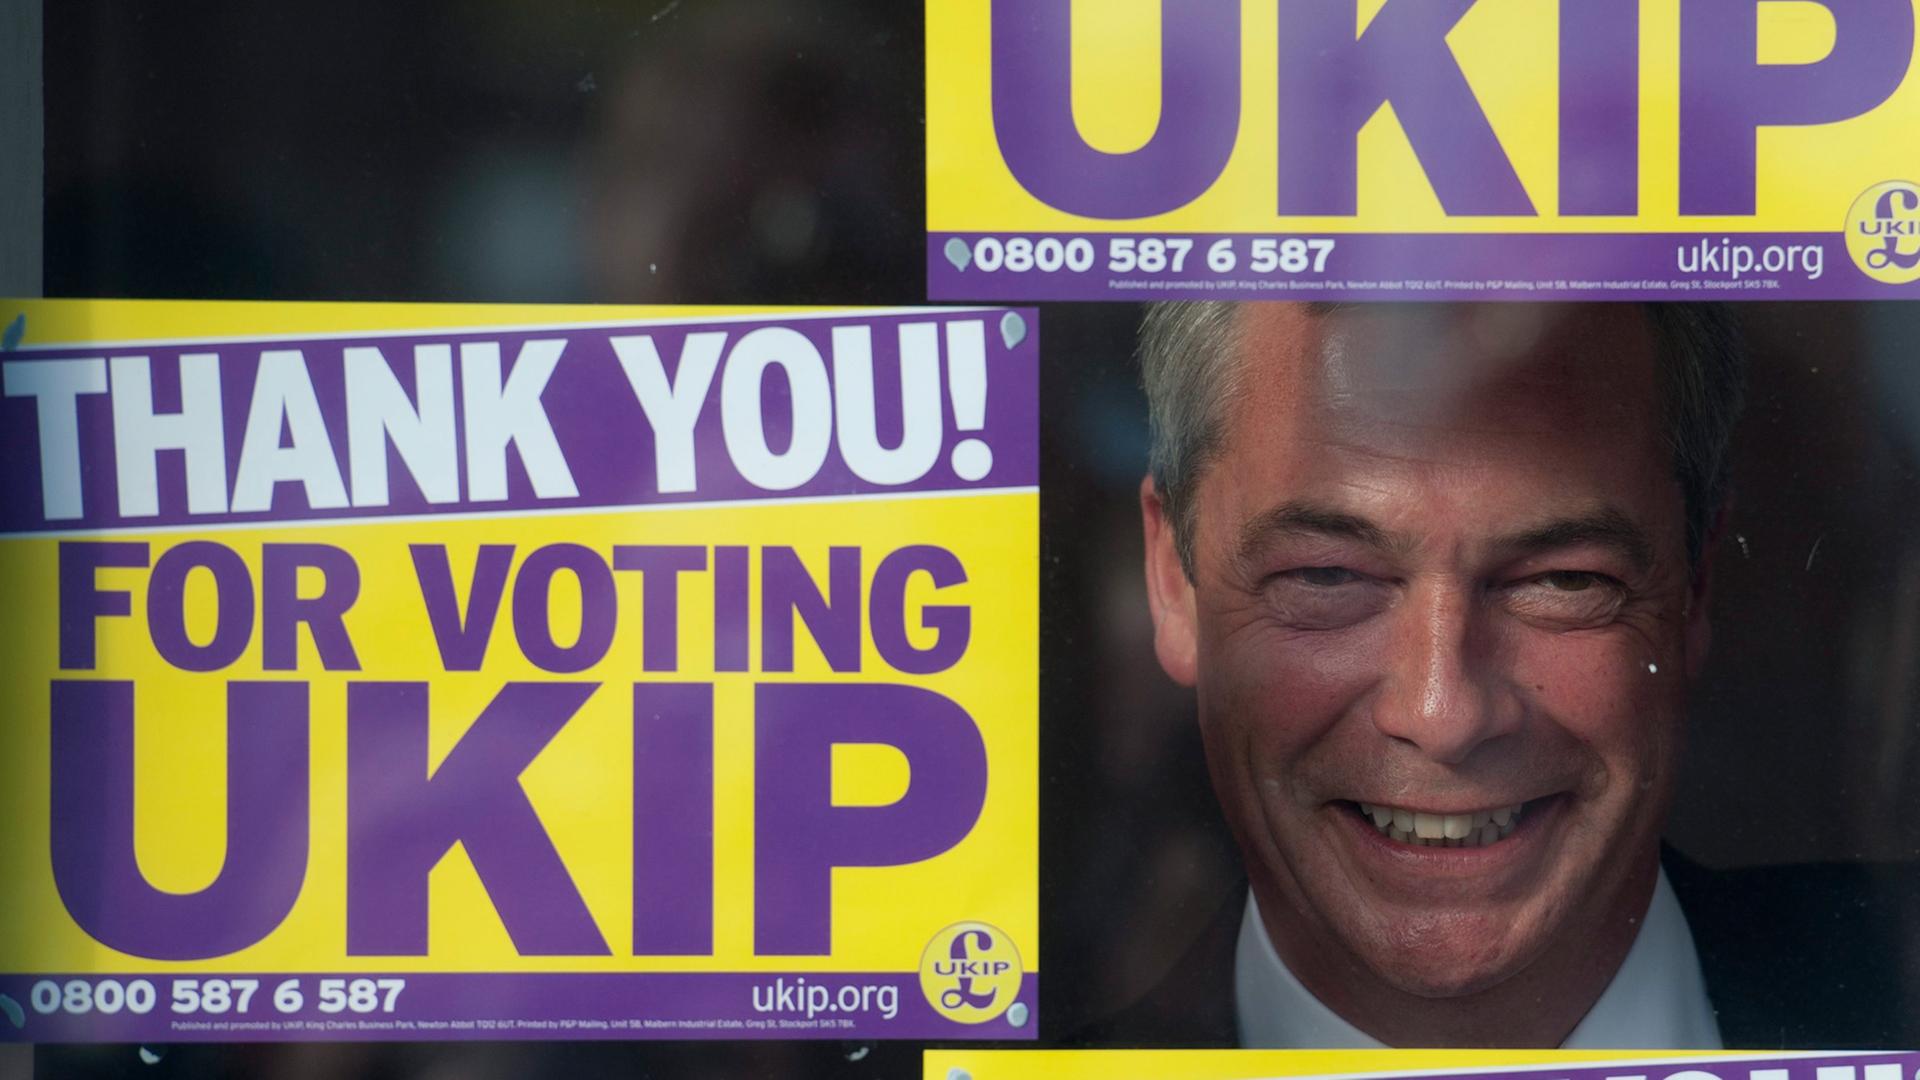 UKIP-Parteichef Nigel Farage schaut durch ein Fenster des Wahlkampfbüros in Clacton-on-Sea, neben, über und unter ihm Plakate mit der Aufschrift "Thank you for voting UKIP"